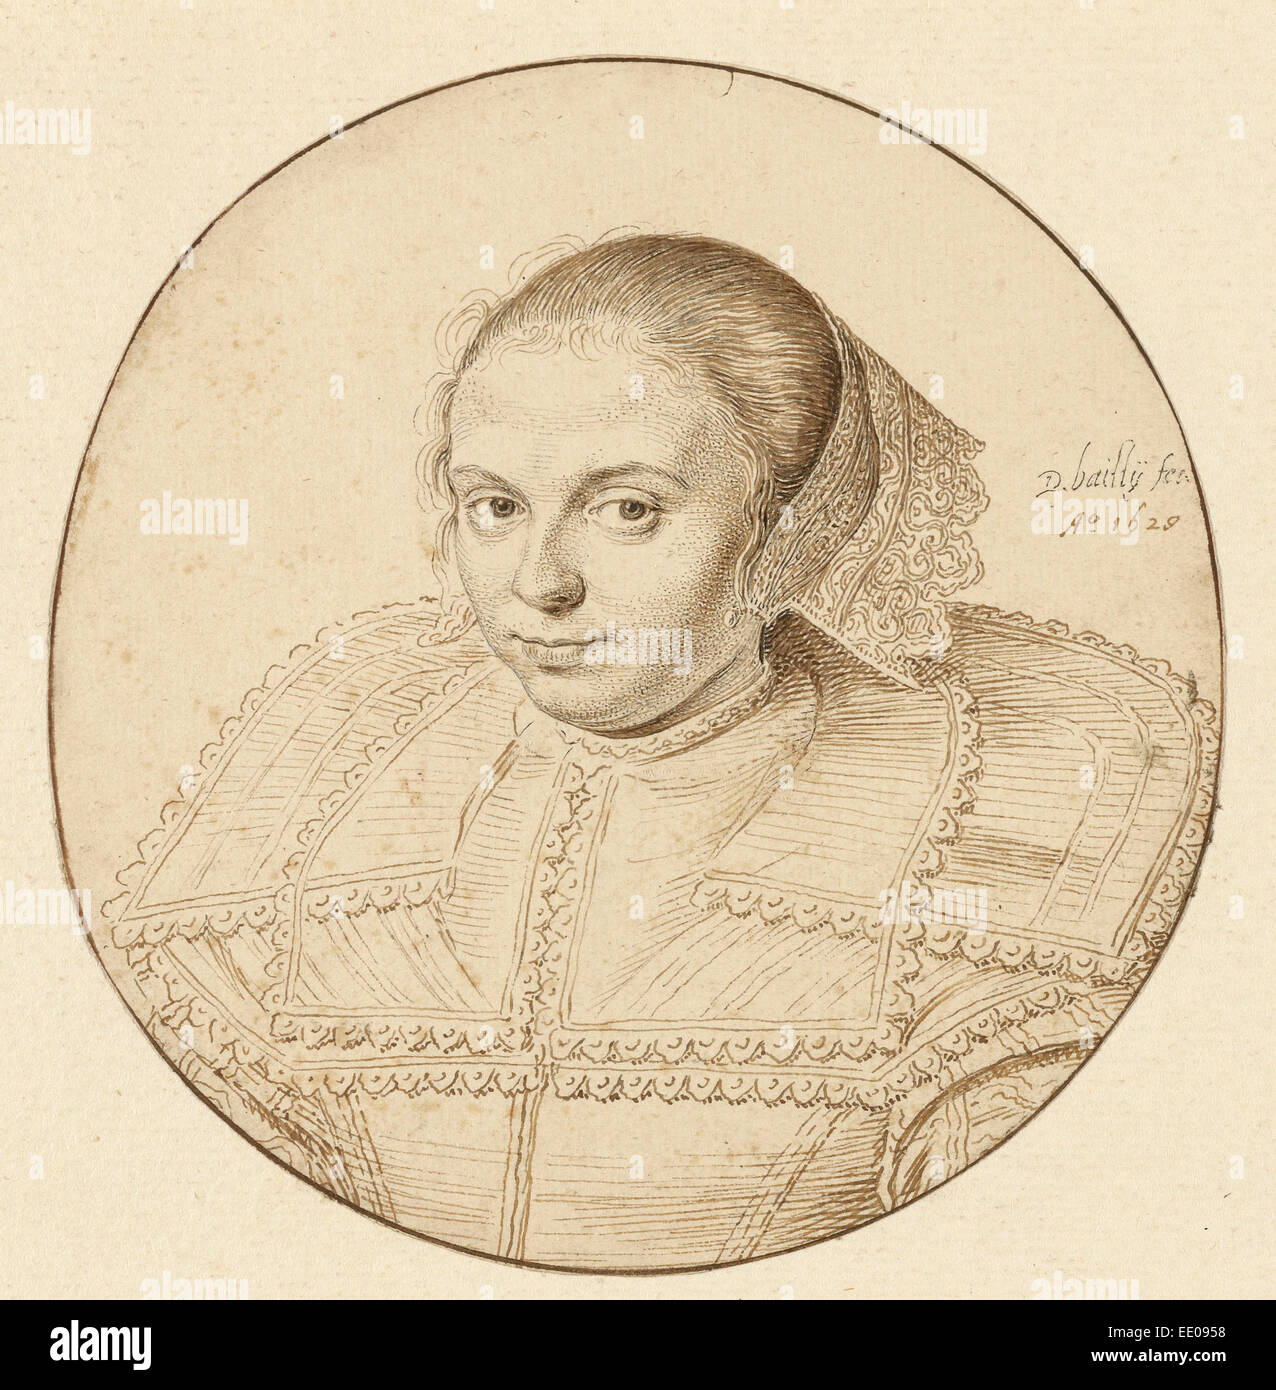 Portrait d'une femme ; David Bailly, Néerlandais, 1584 - 1657 ; Pays-Bas, Europe ; 1629 ; plume et encre marron clair et foncé Banque D'Images